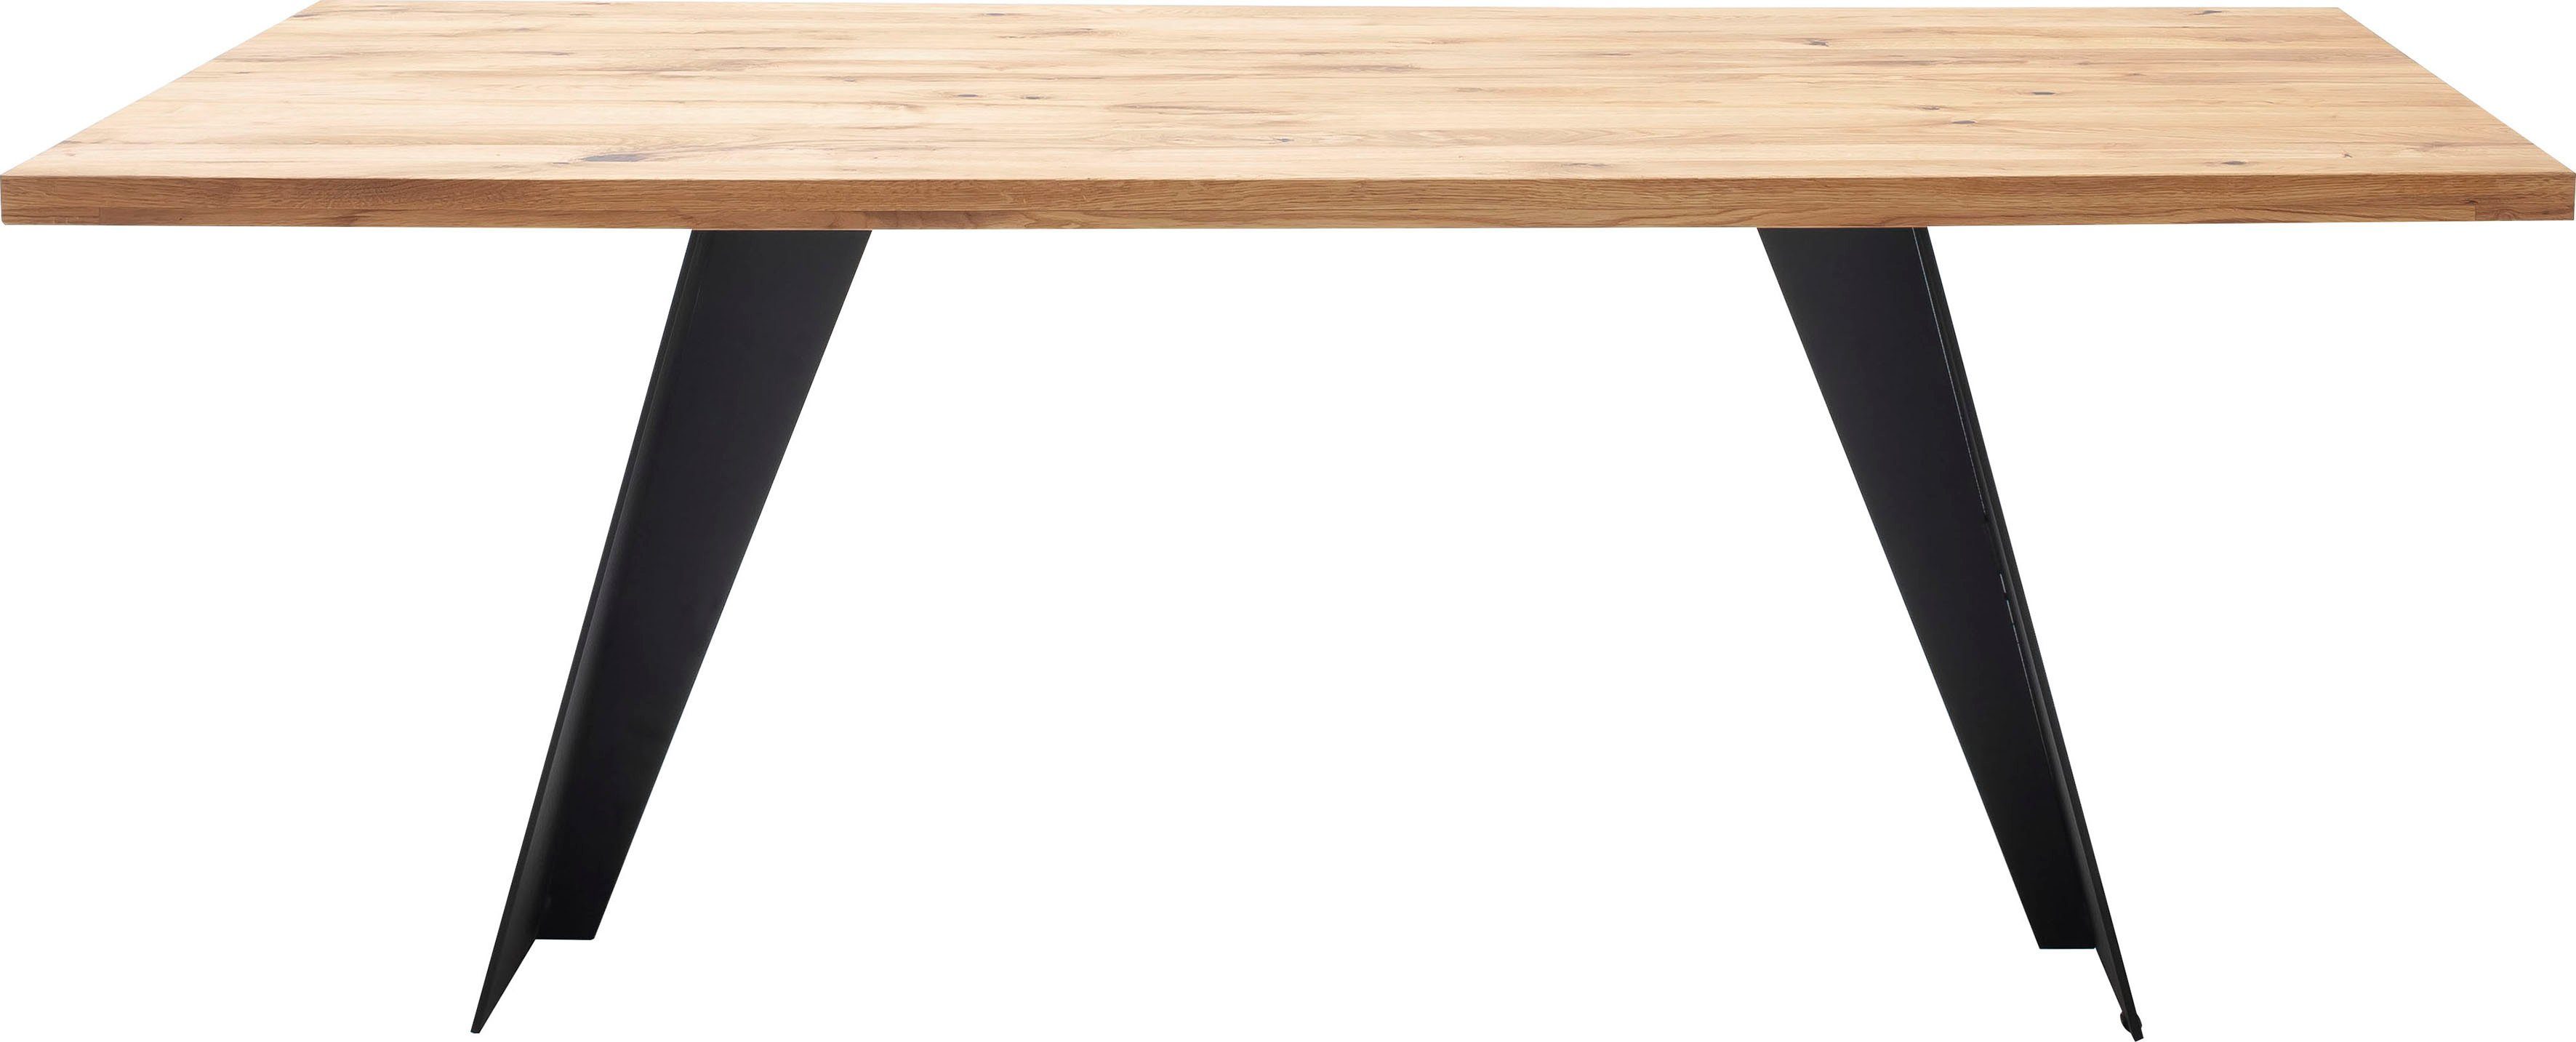 MCA furniture Esstisch Goa, Massivholz Tisch, Esstisch in Wildeiche Massiv  FSC-Zertifiziert, Tischplatte aufgedoppelt ca. 4 cm mit gerader Kante